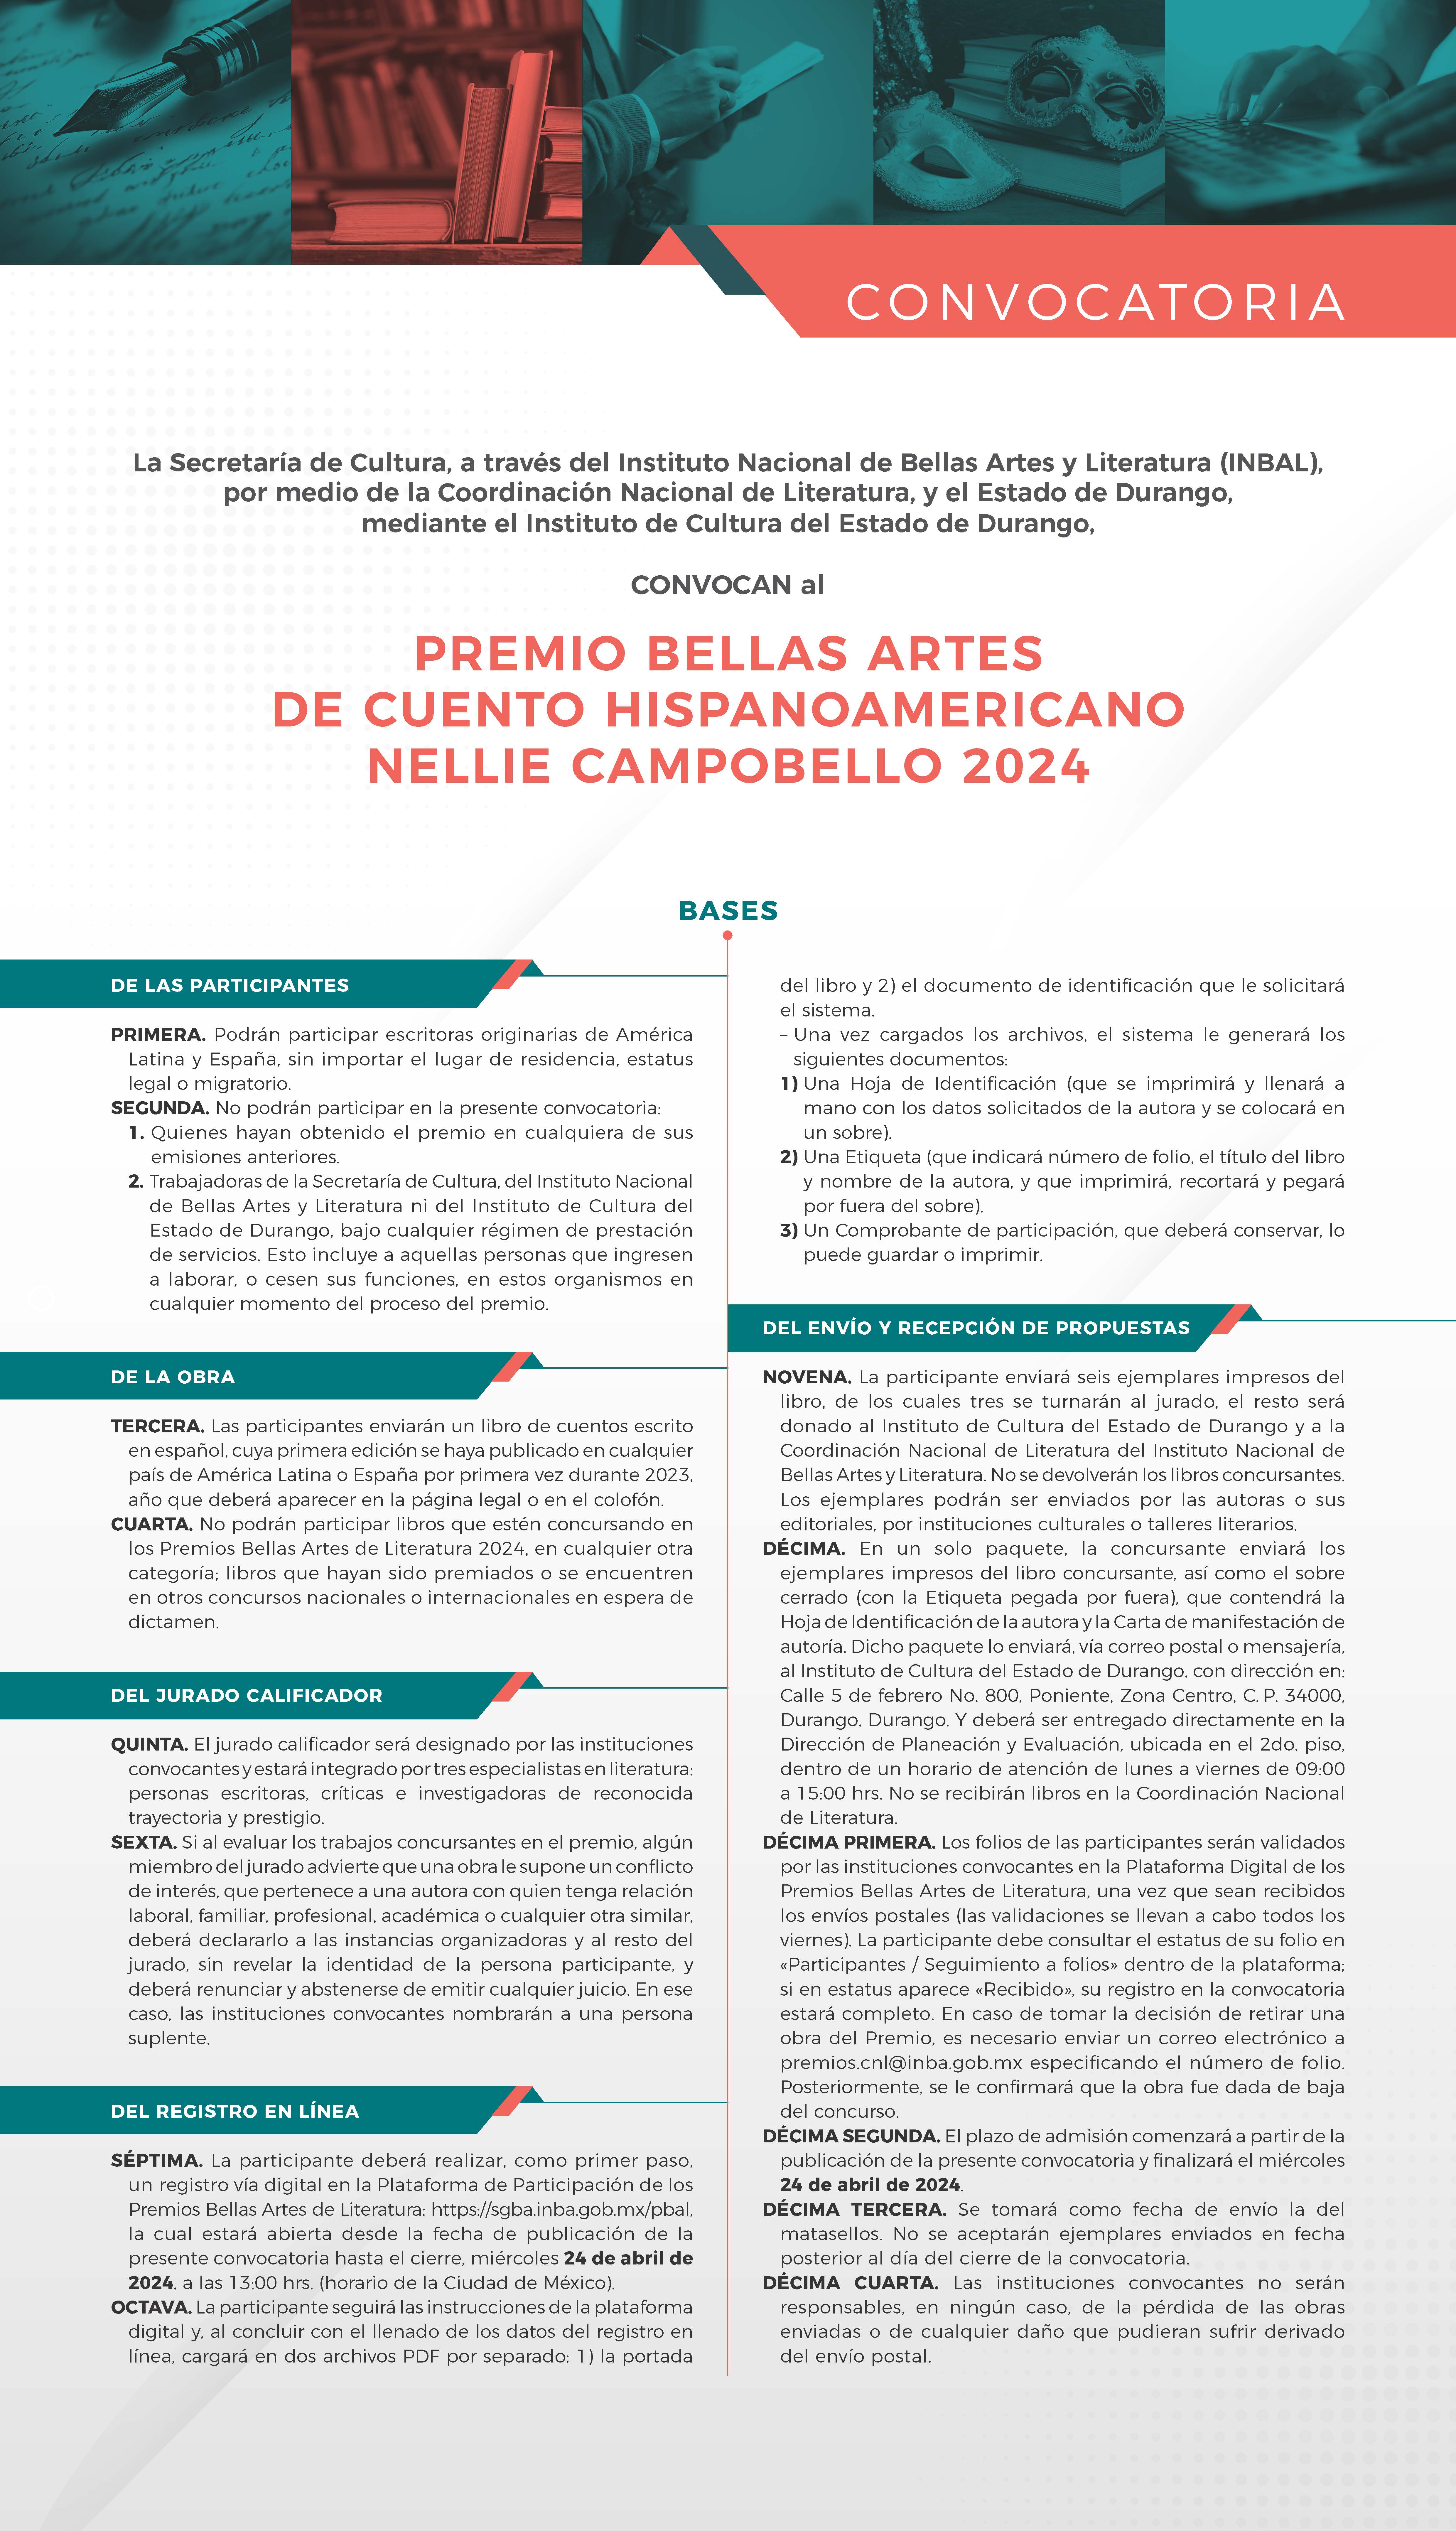 CONVOCATORIA PREMIO NELLIE CAMPOBELLO 2024 RF 1